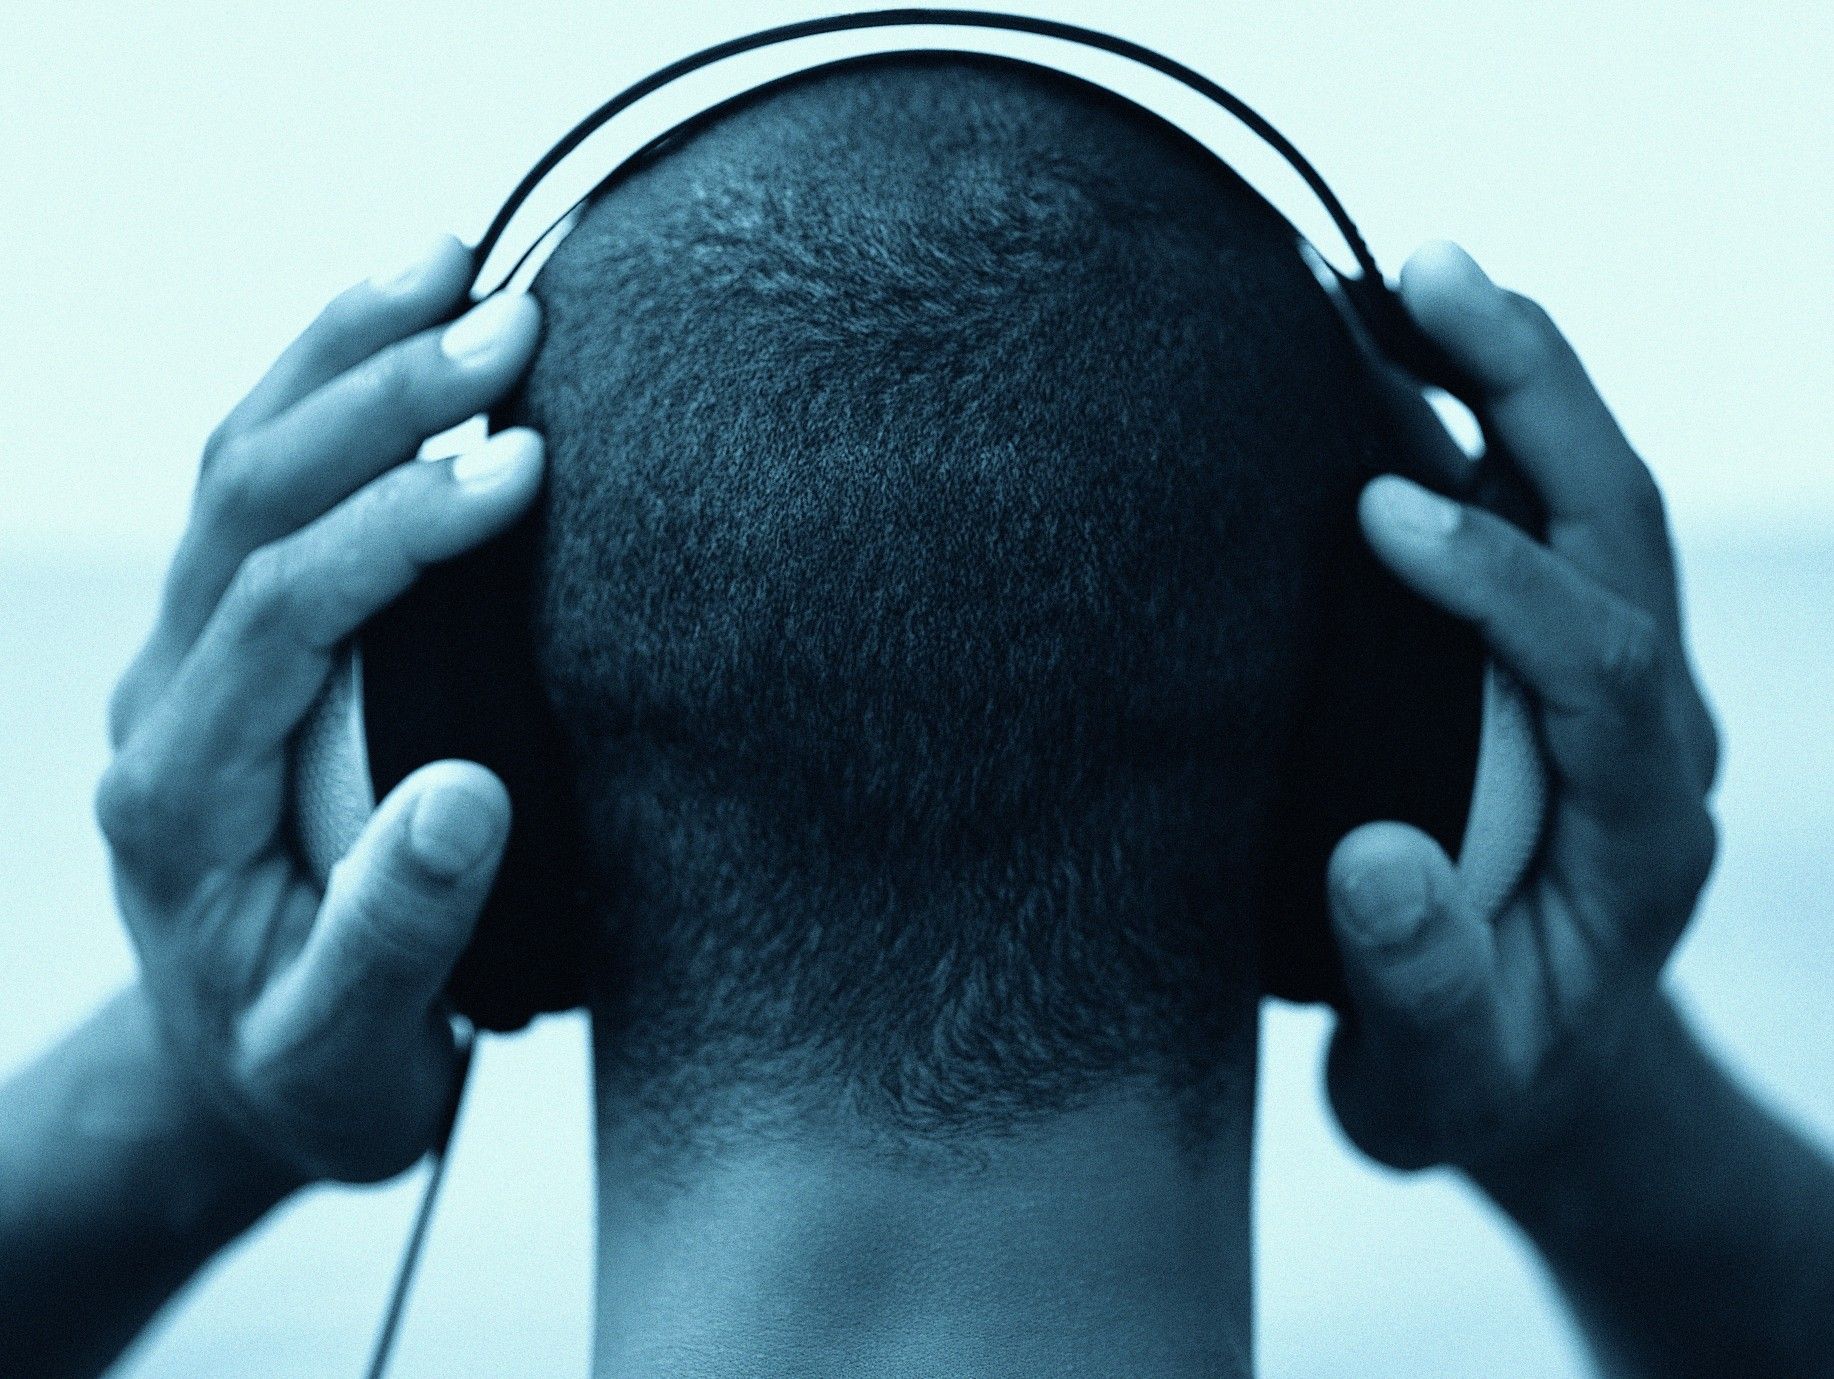 En årlig opgørelse viser, at forbruget af gammel musik er vokset med 19,3 %, mens forbruget af ny musik er faldet med 3,7 %. Hvad betyder dette for fremtidens musikindustri? Foto: Getty Images